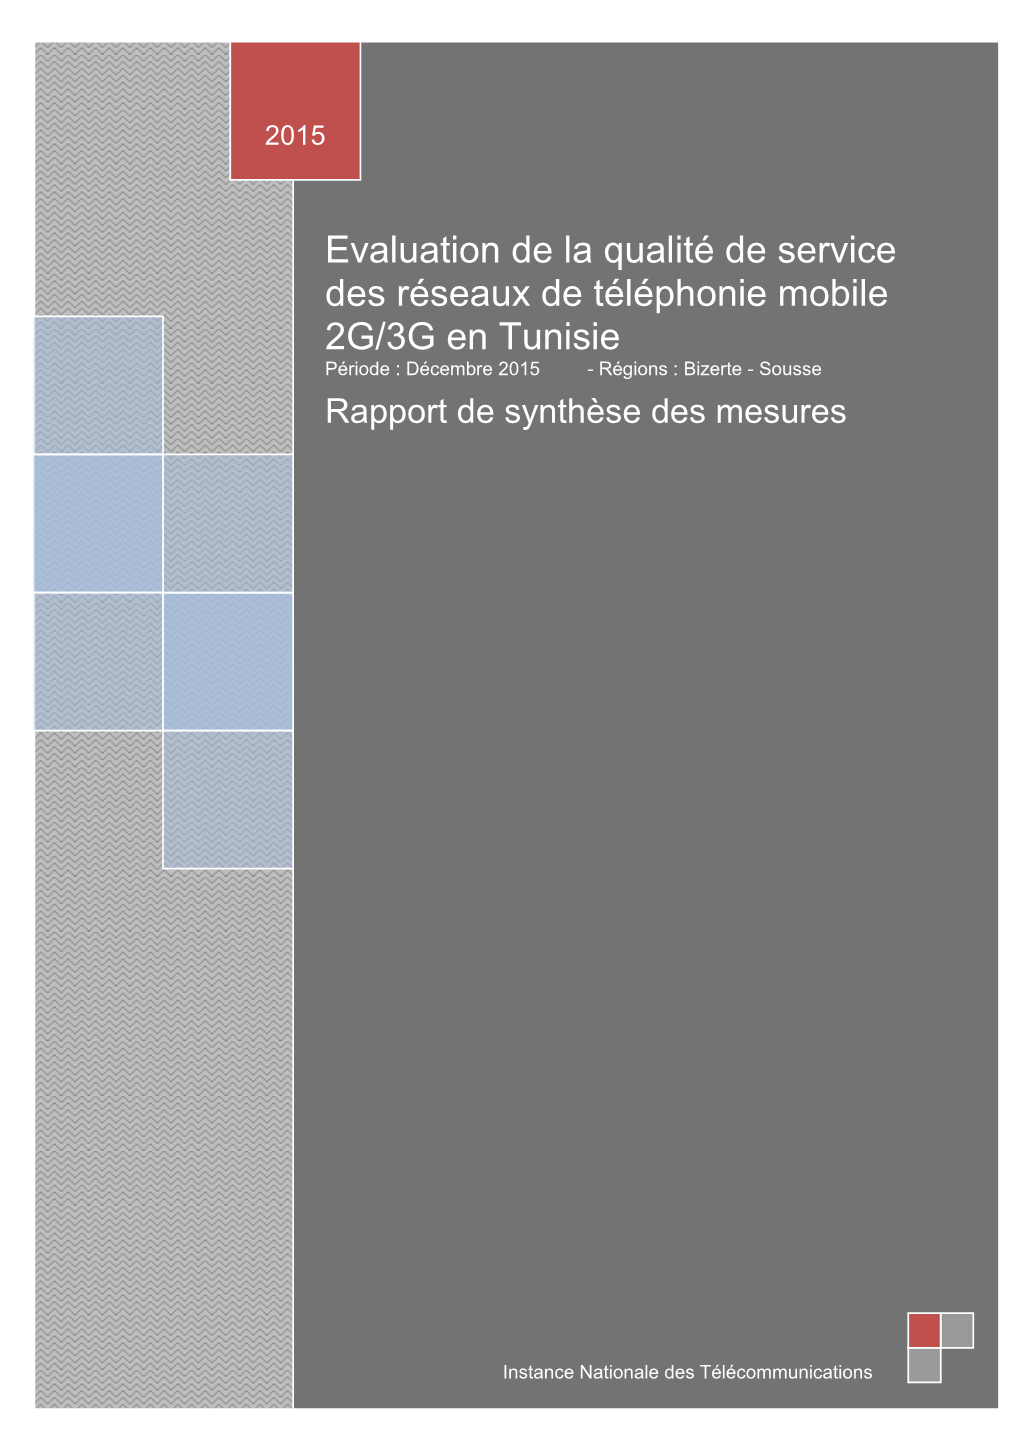 Evaluation De La Qualité De Service Des Réseaux De Téléphonie Mobile 2G/3G En Tunisie Période : Décembre 2015 - Régions : Bizerte - Sousse